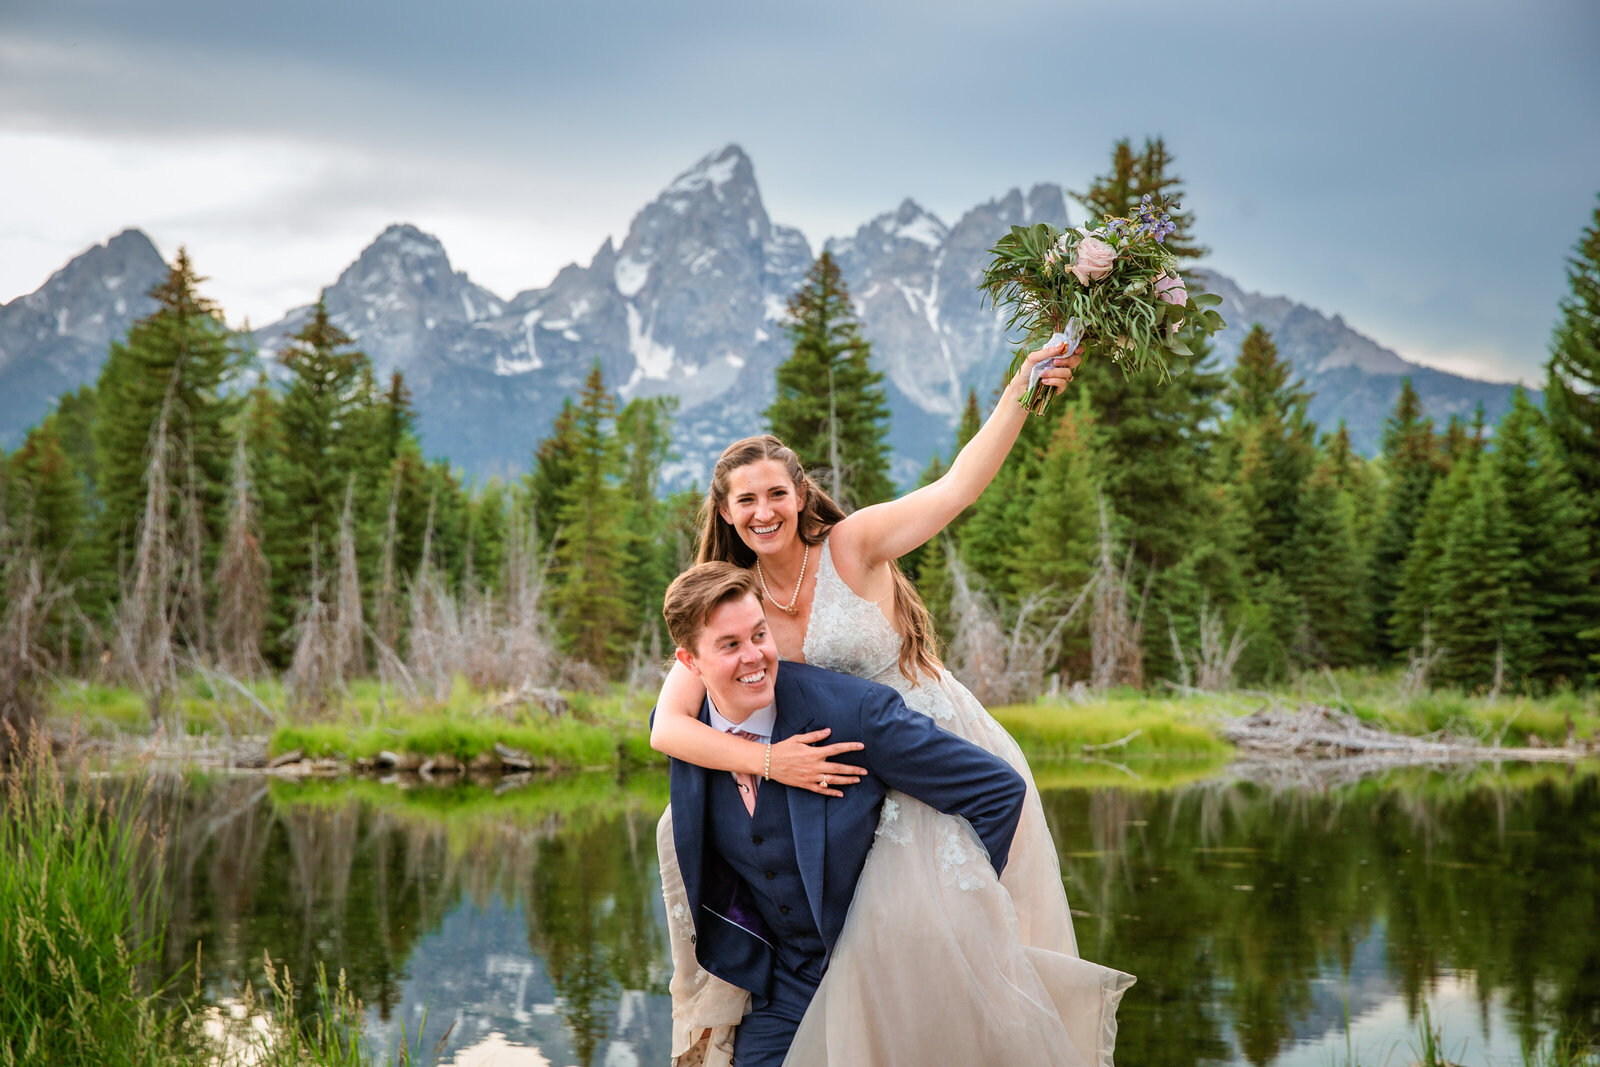 Jackson Hole photographers capture bride and groom celebrating recent wedding